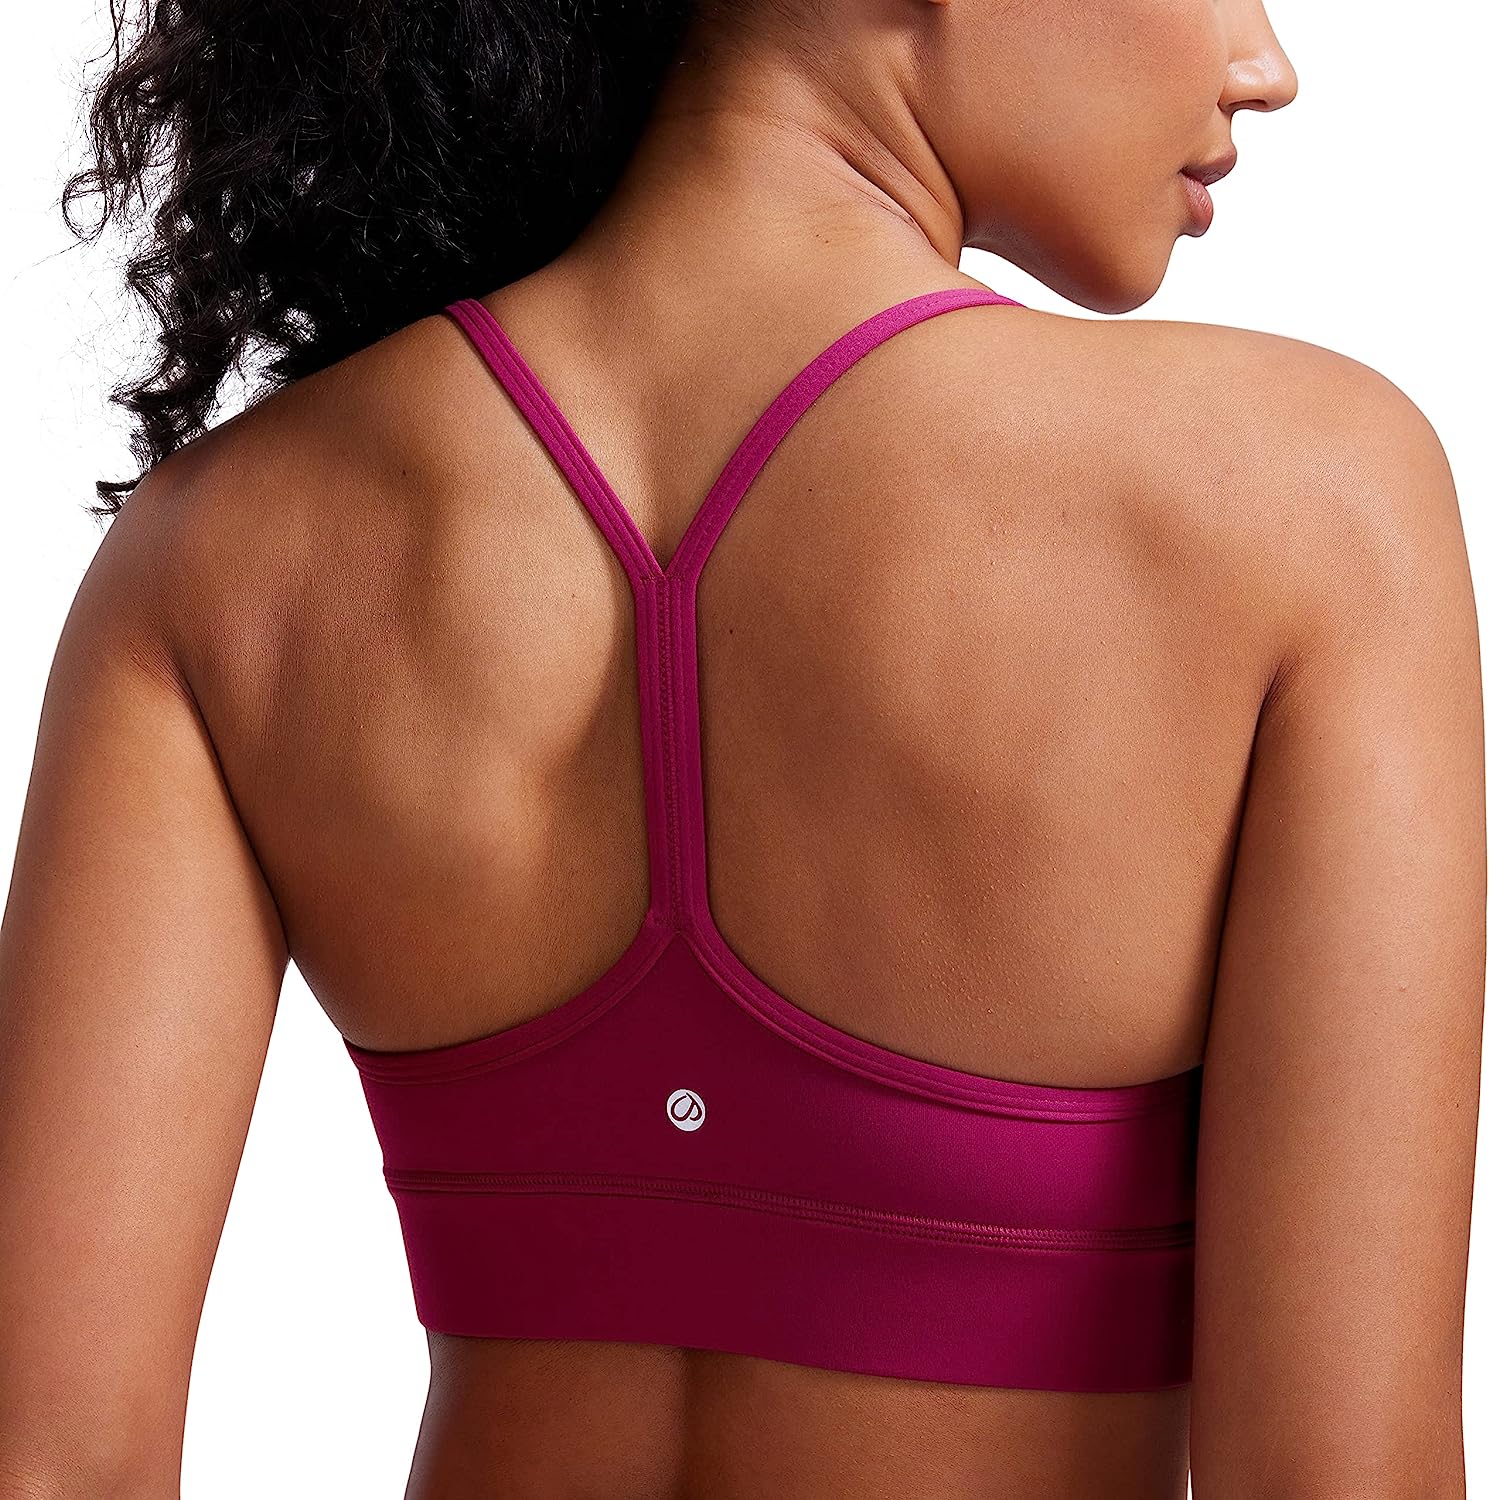 Sports bra with narrow straps